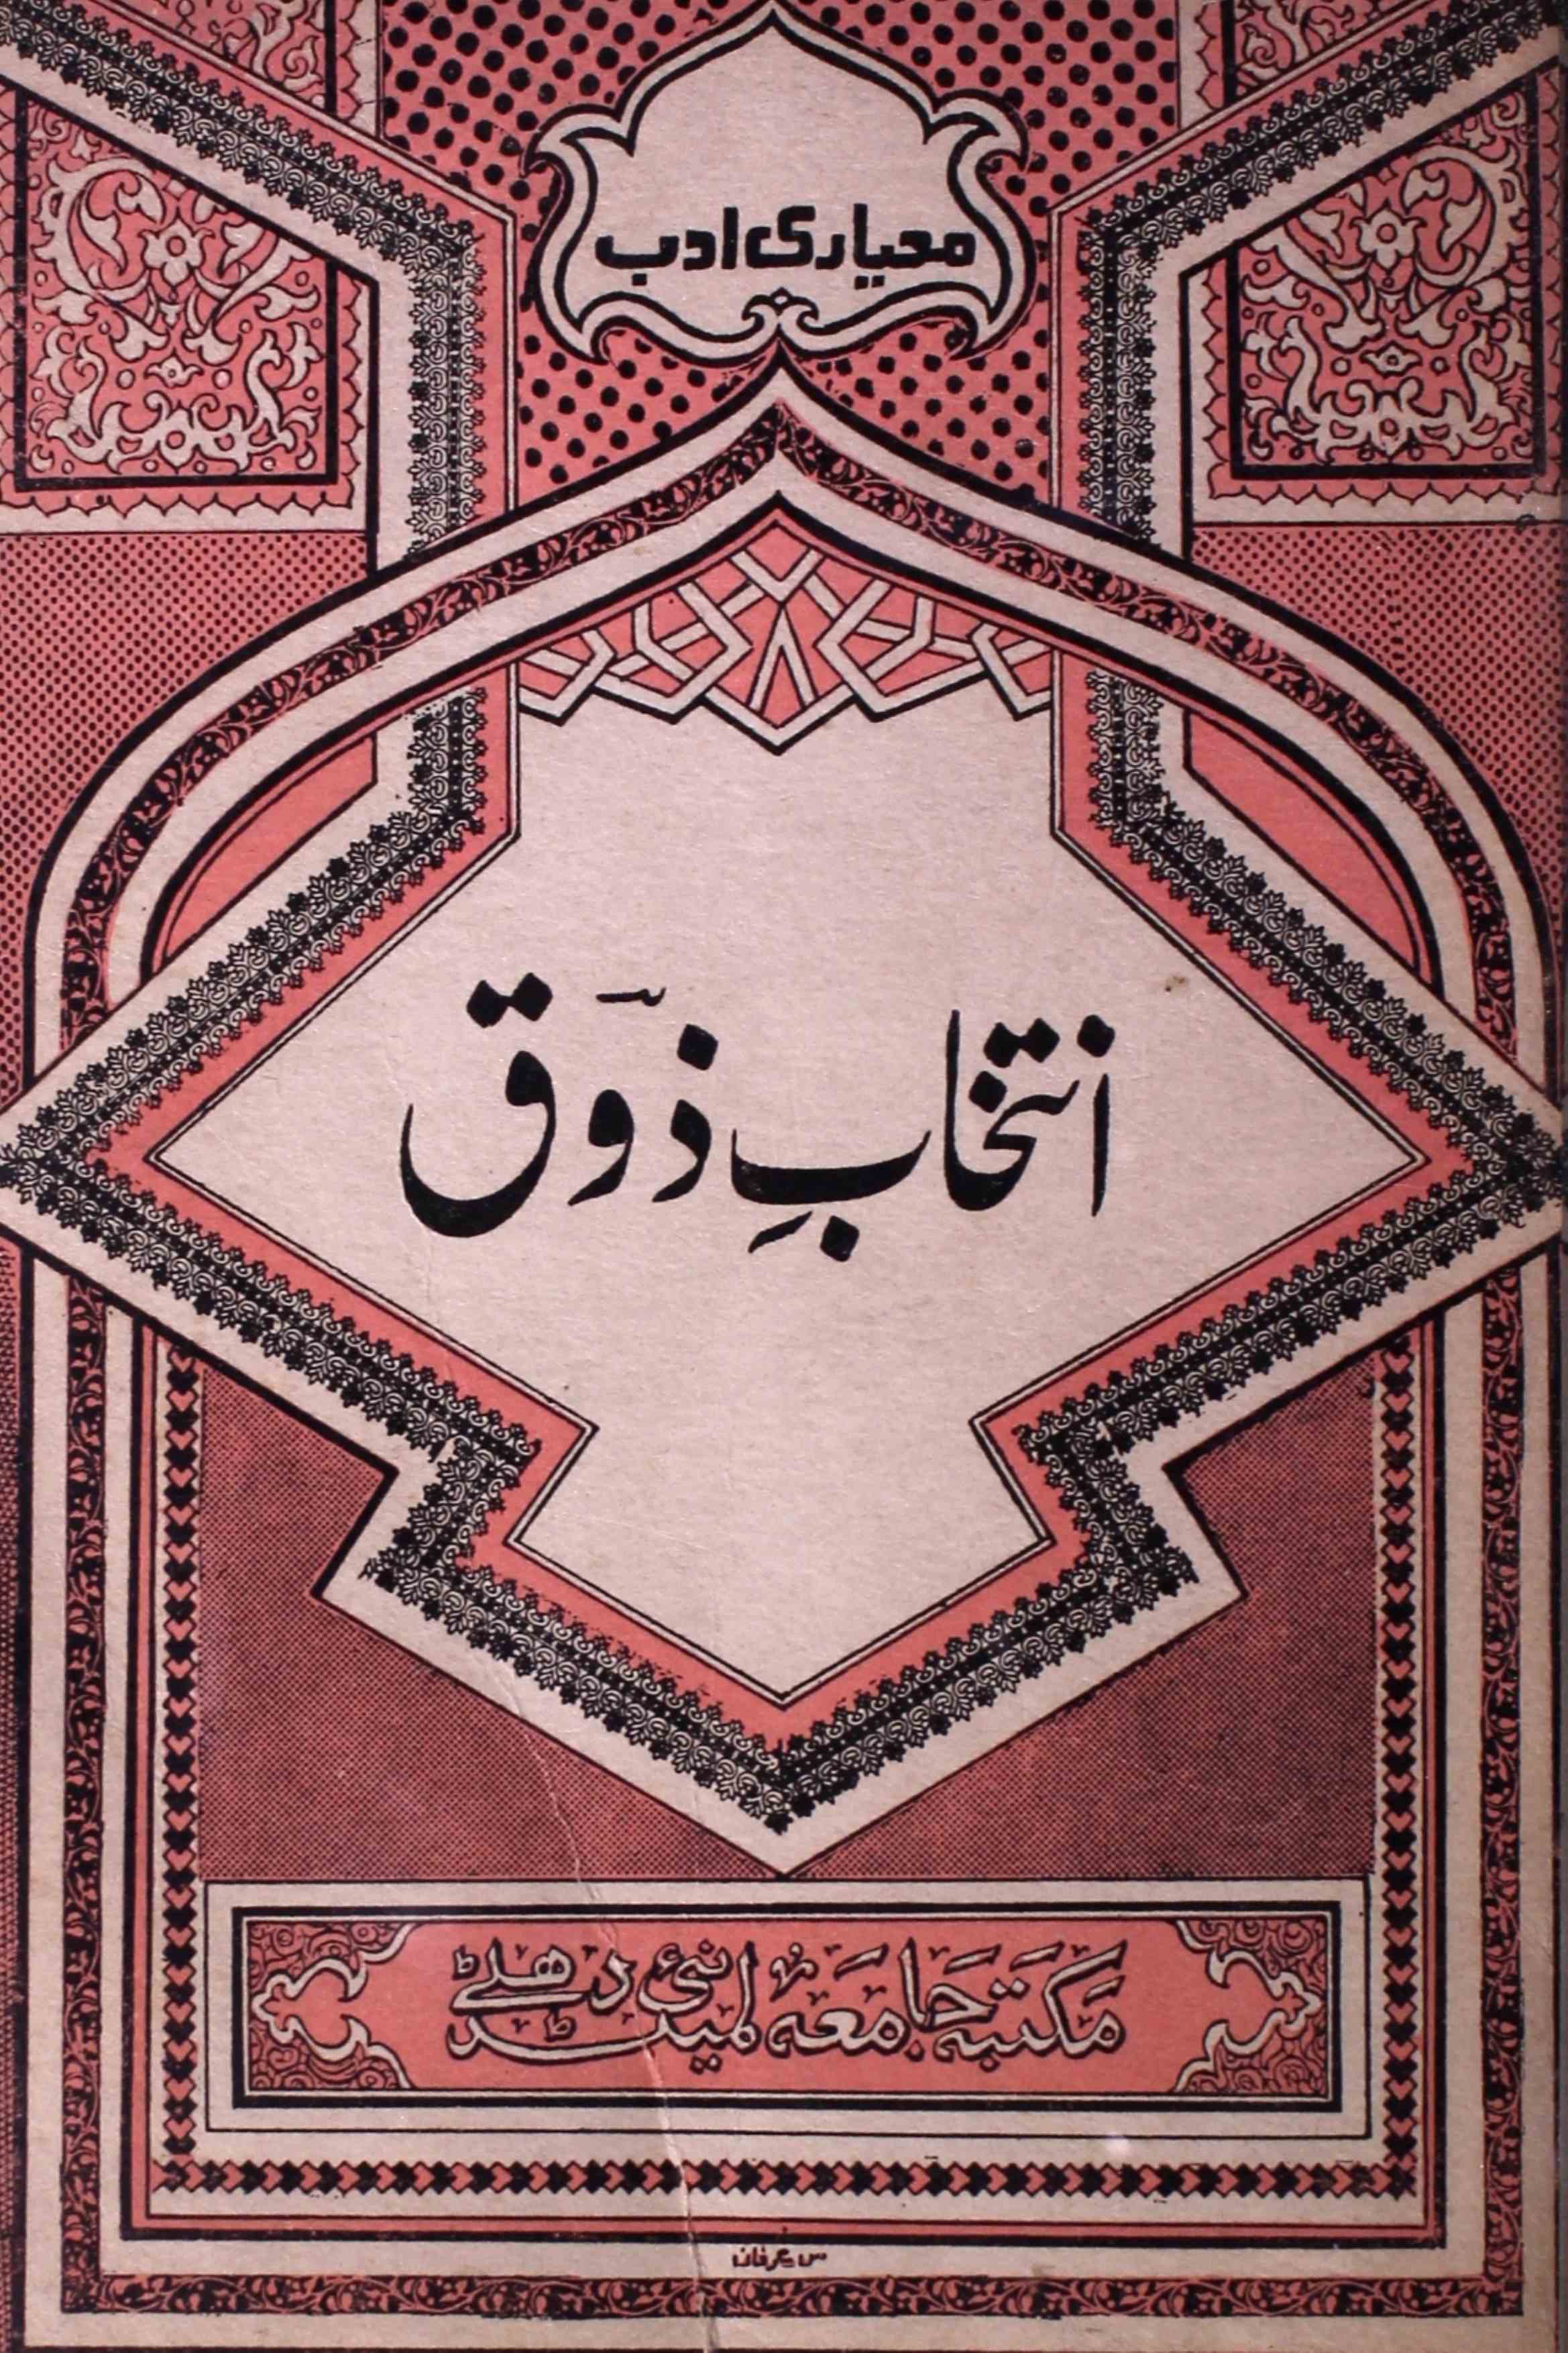 Intikhab-e-Zauq